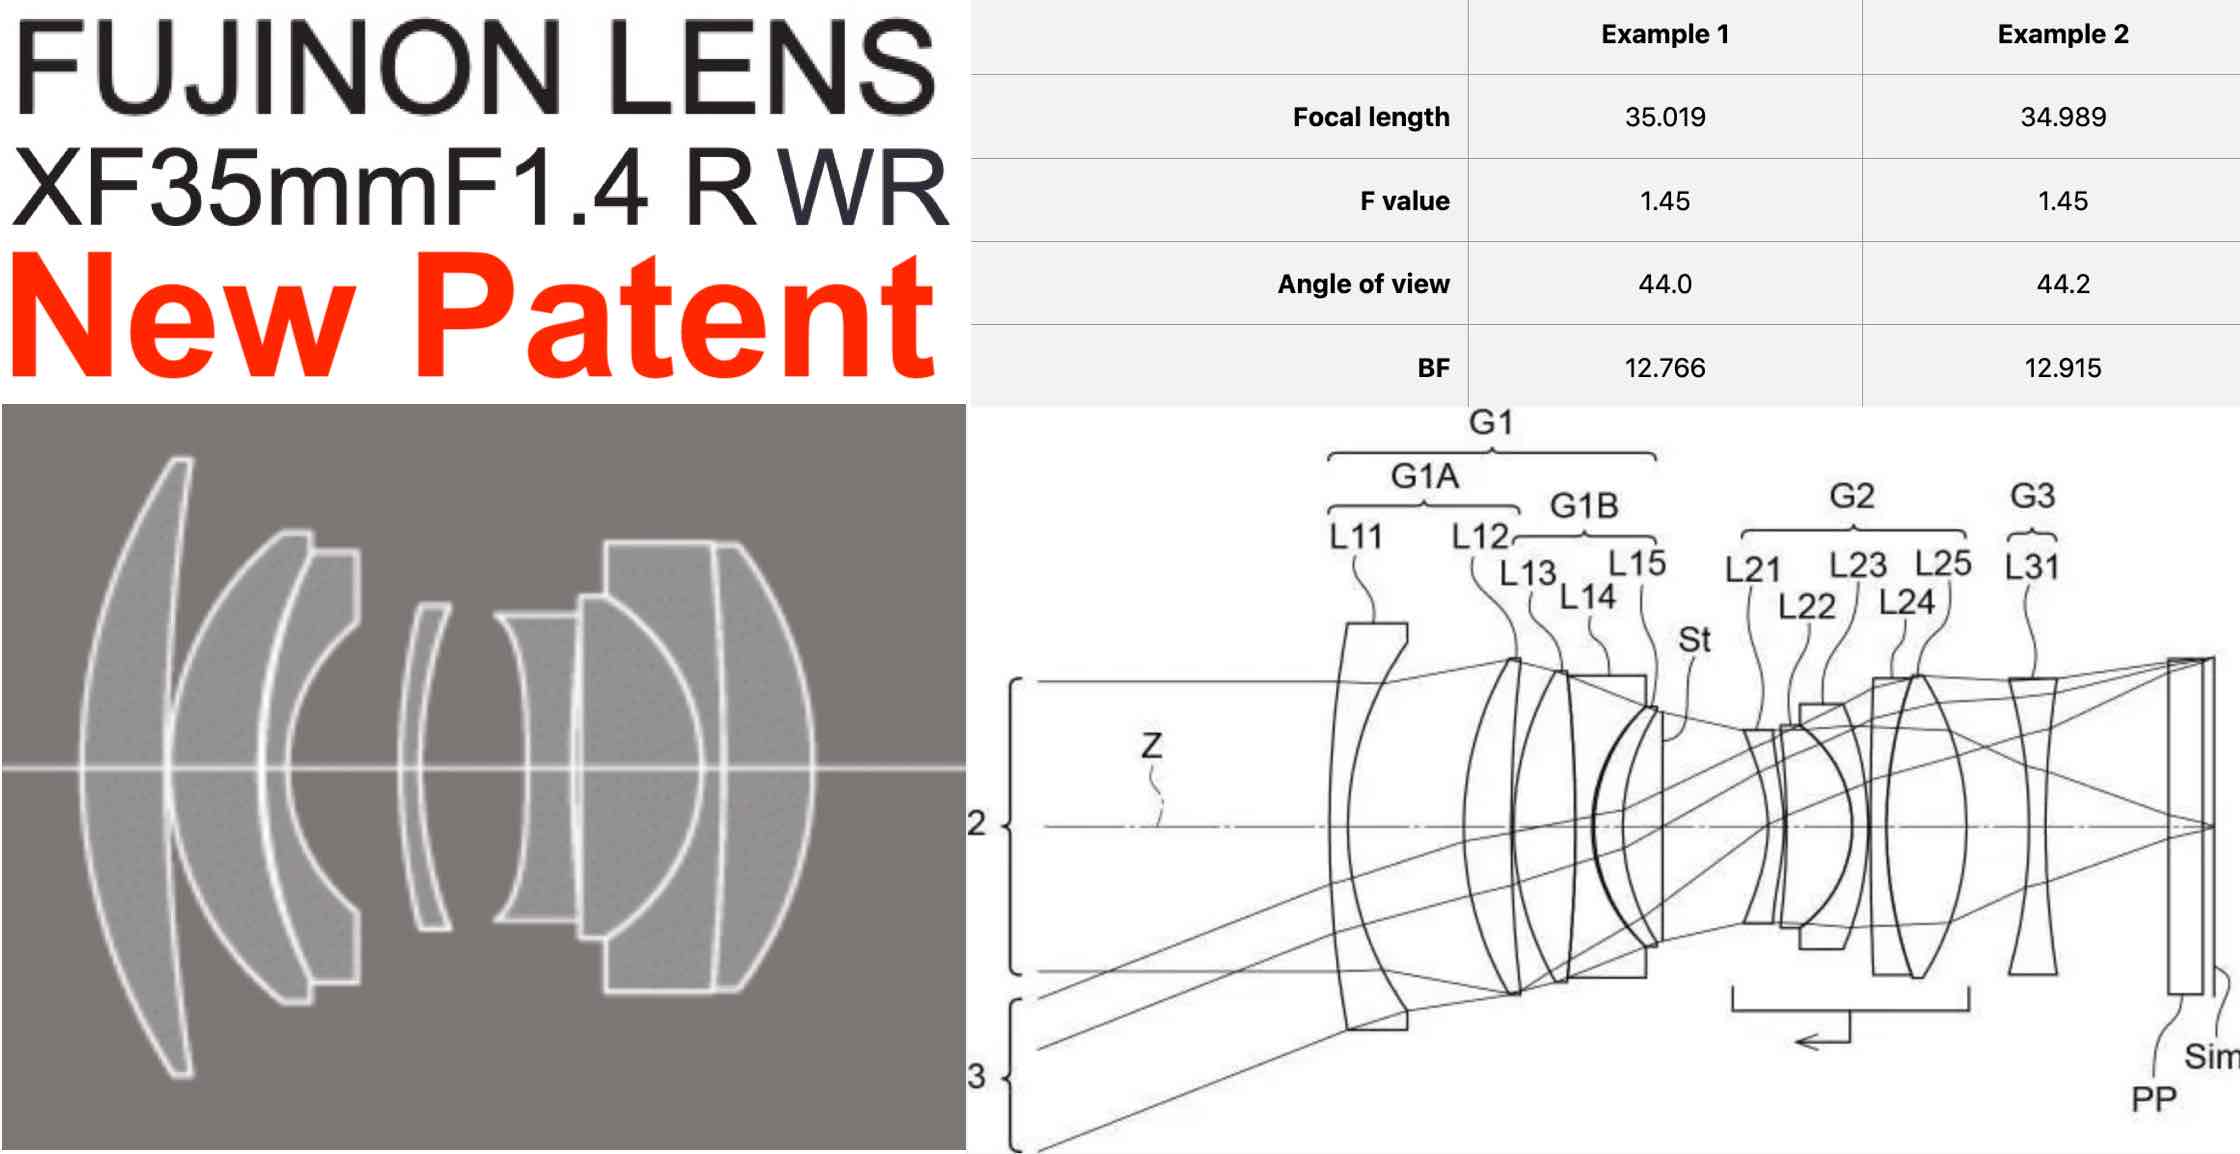 New Fujifilm Patent Shows Fujinon XF35mmF1.4 MK II - Fuji Rumors